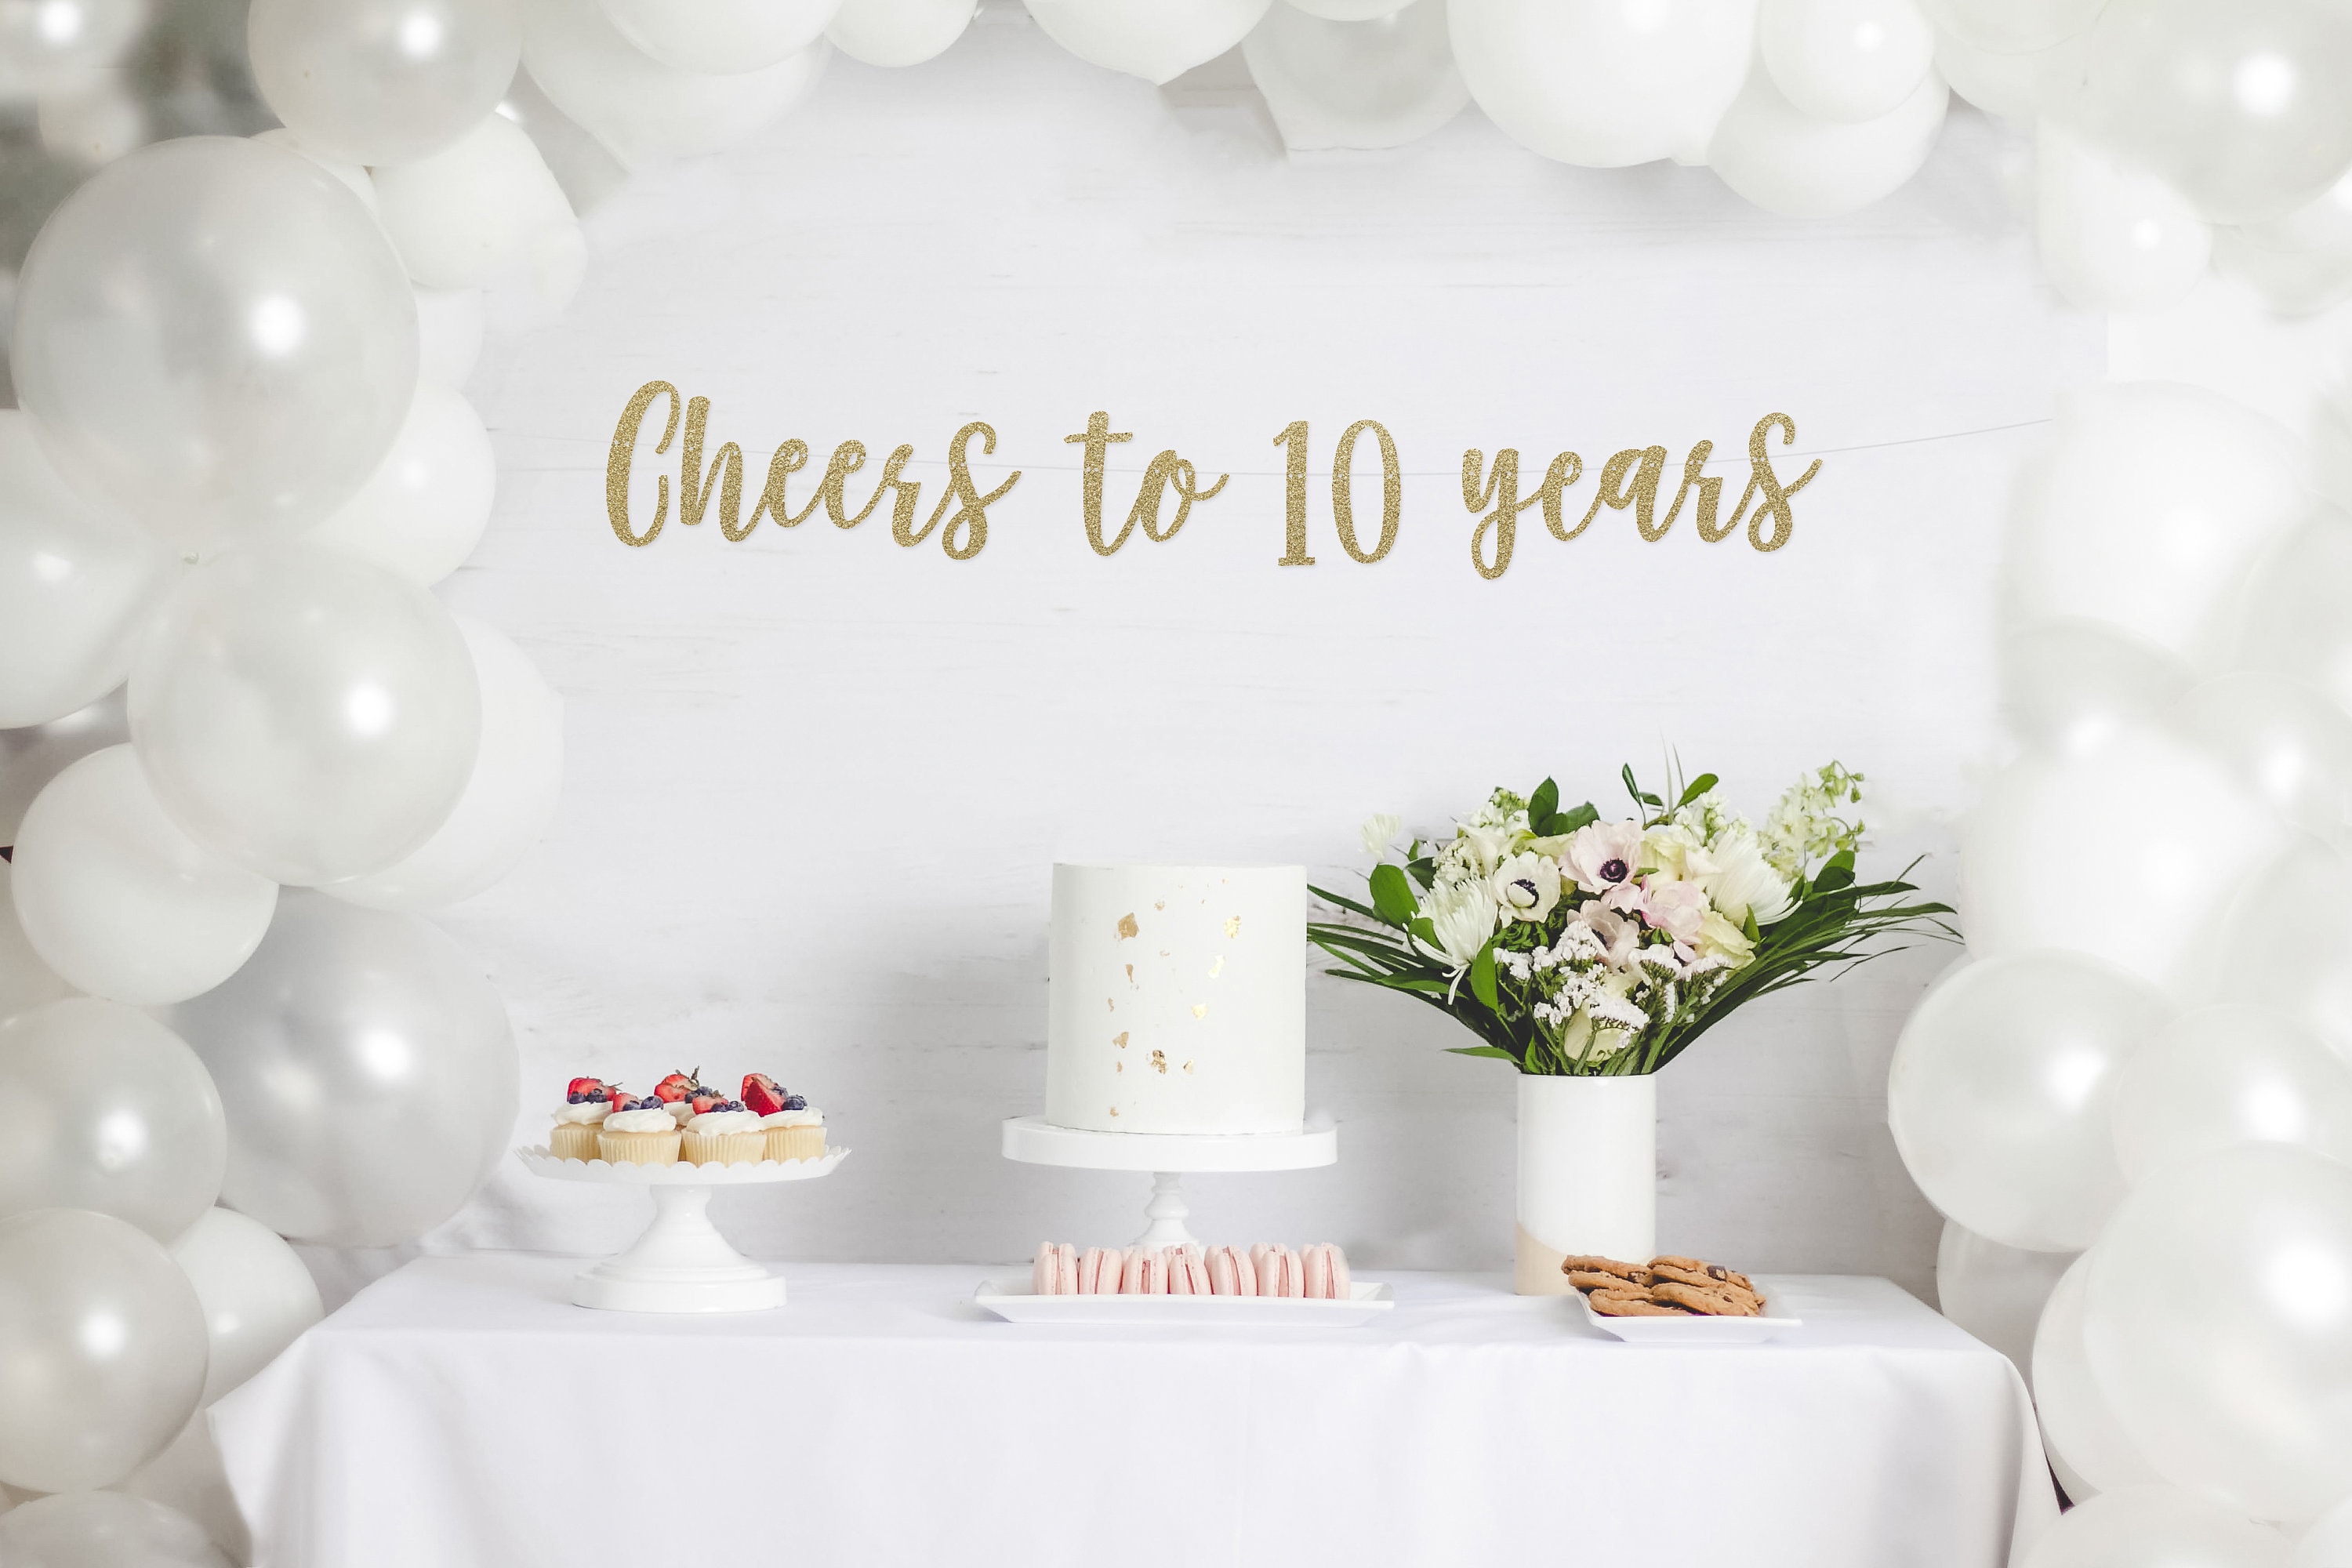 Vive 10 ans 10e anniversaire de mariage Décoration de fête